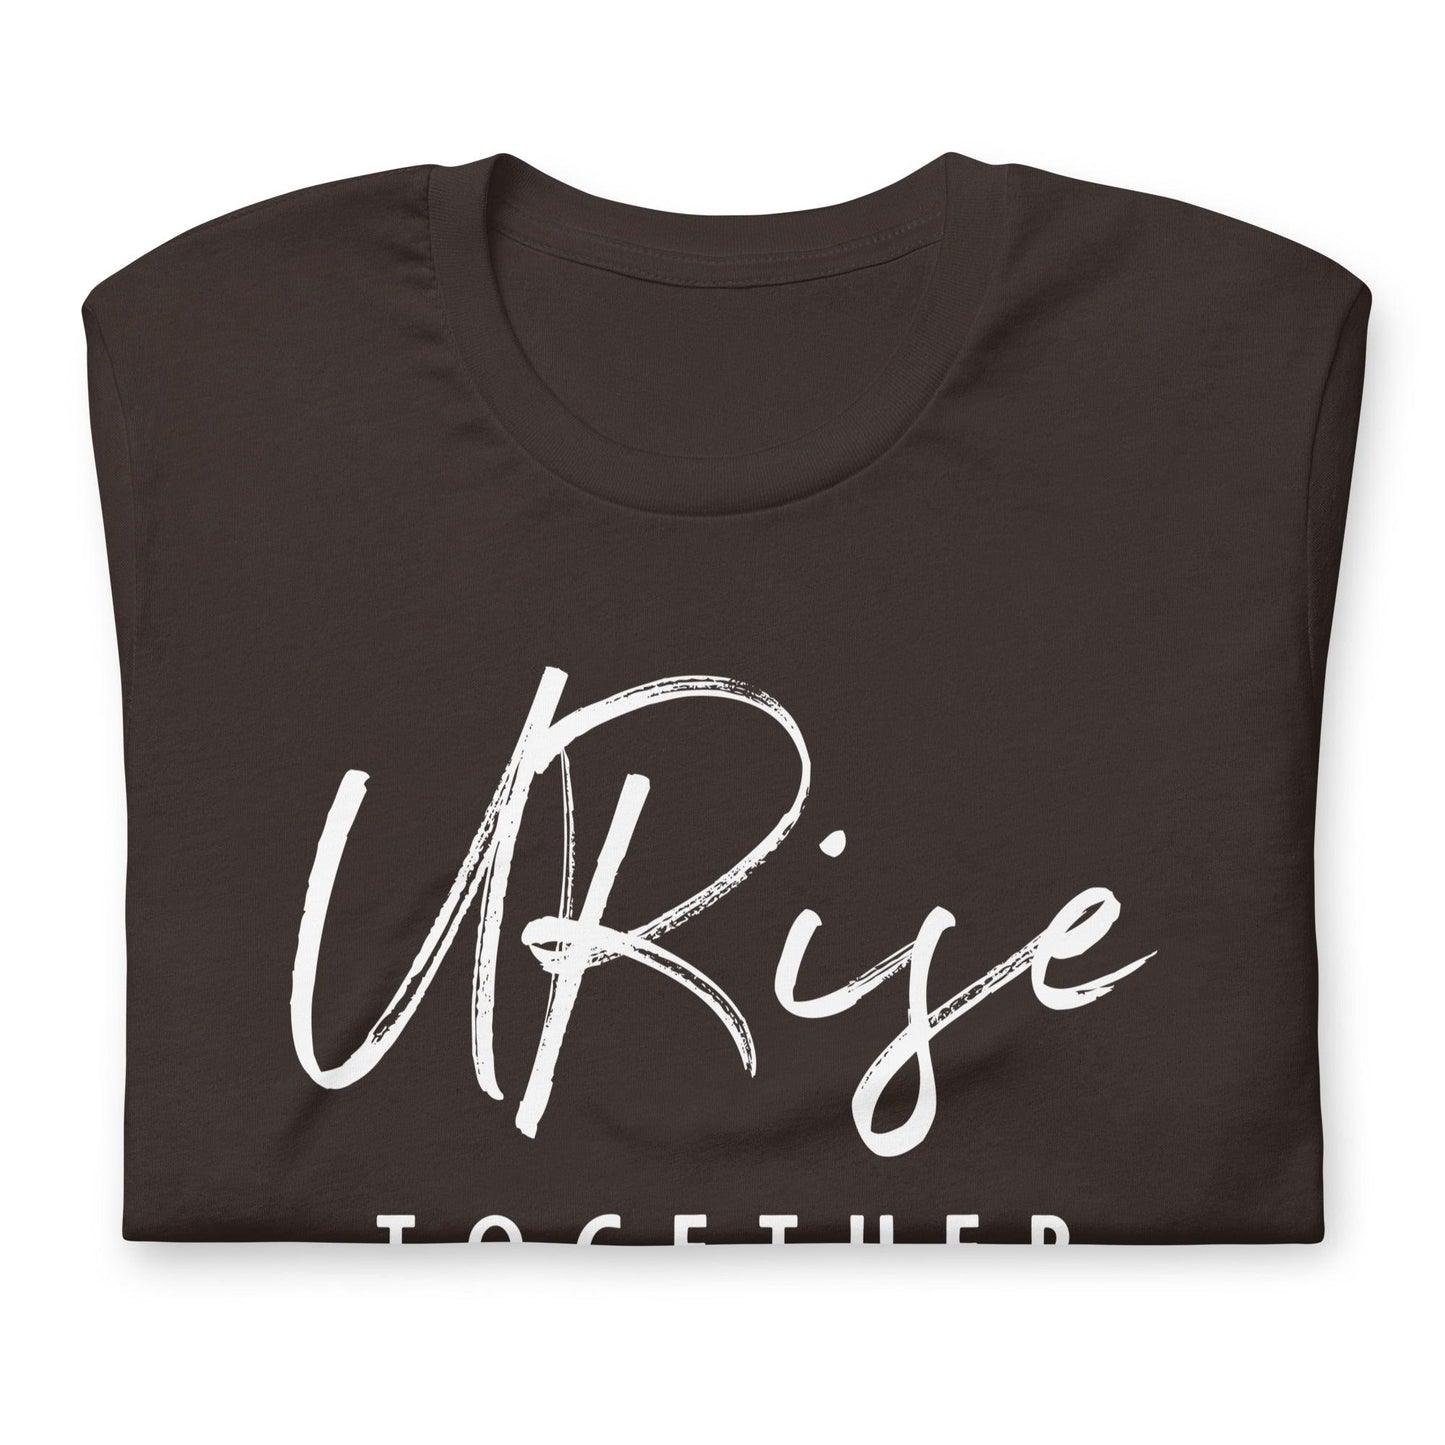 "URise Together" T-Shirt - Brown - URiseTogetherApparel